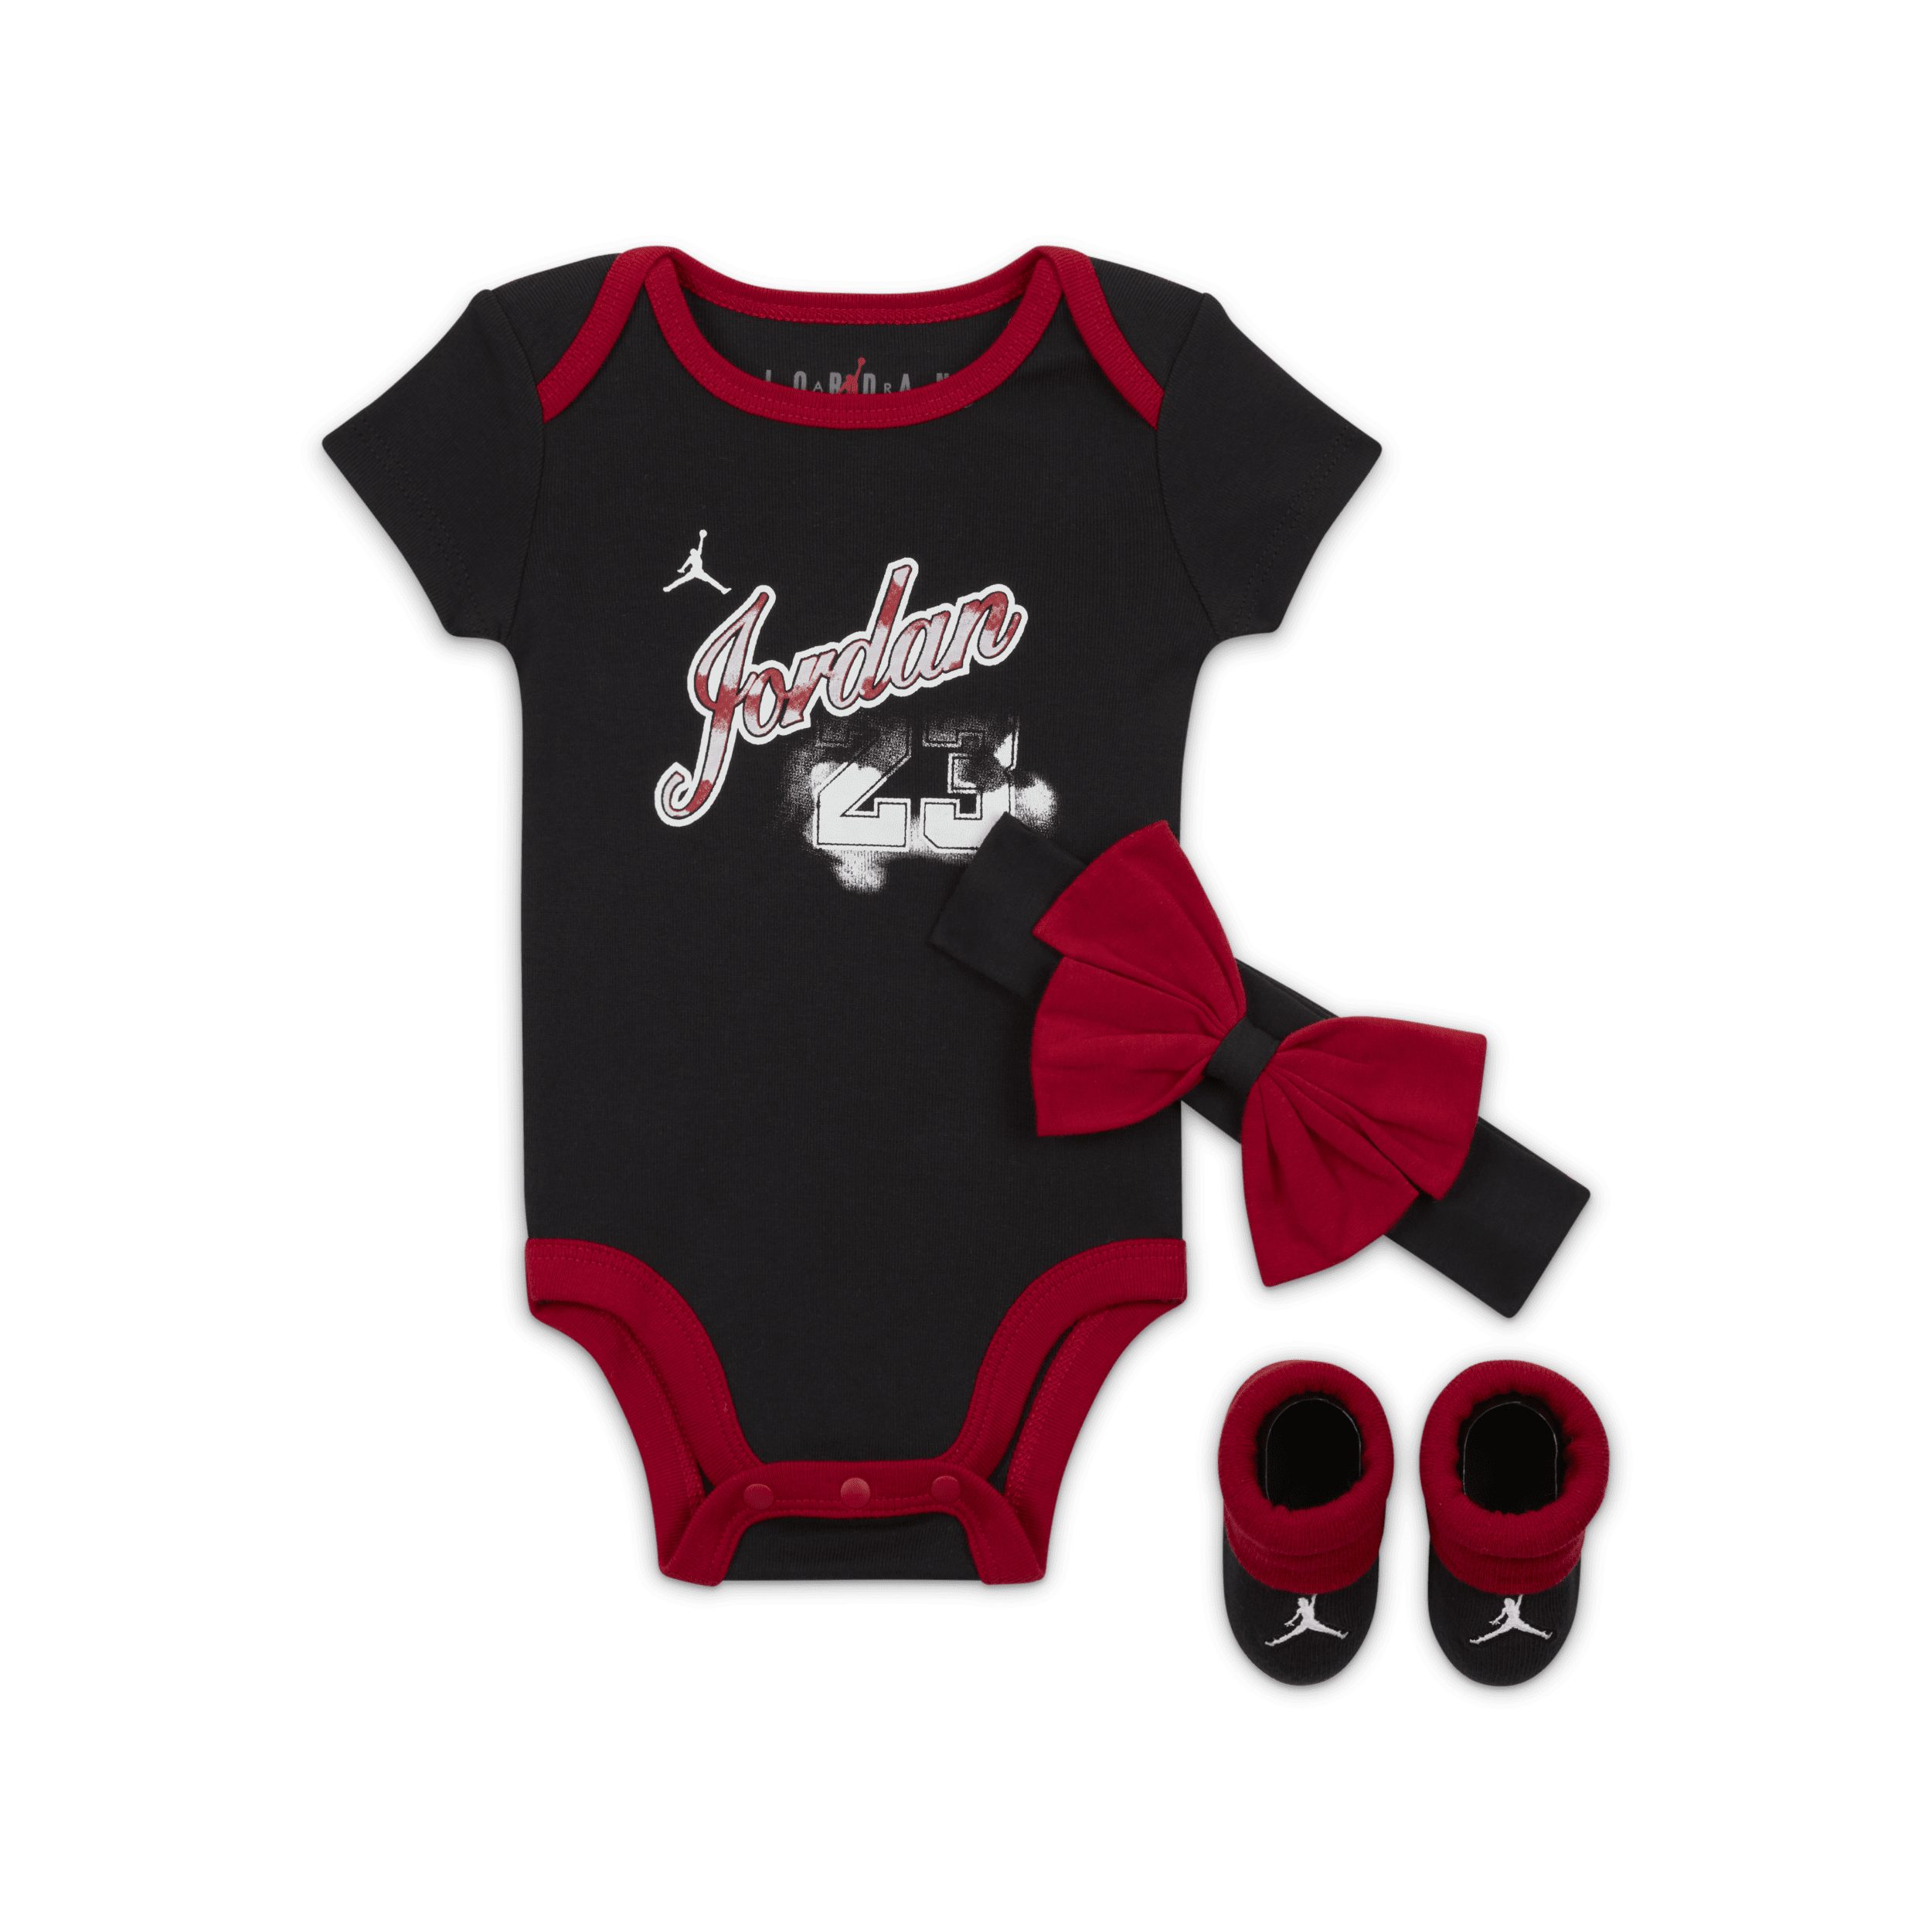 Jordan Sky Rookie 3-Piece Boxed Set driedelige babyset (3-6 maanden) - Zwart